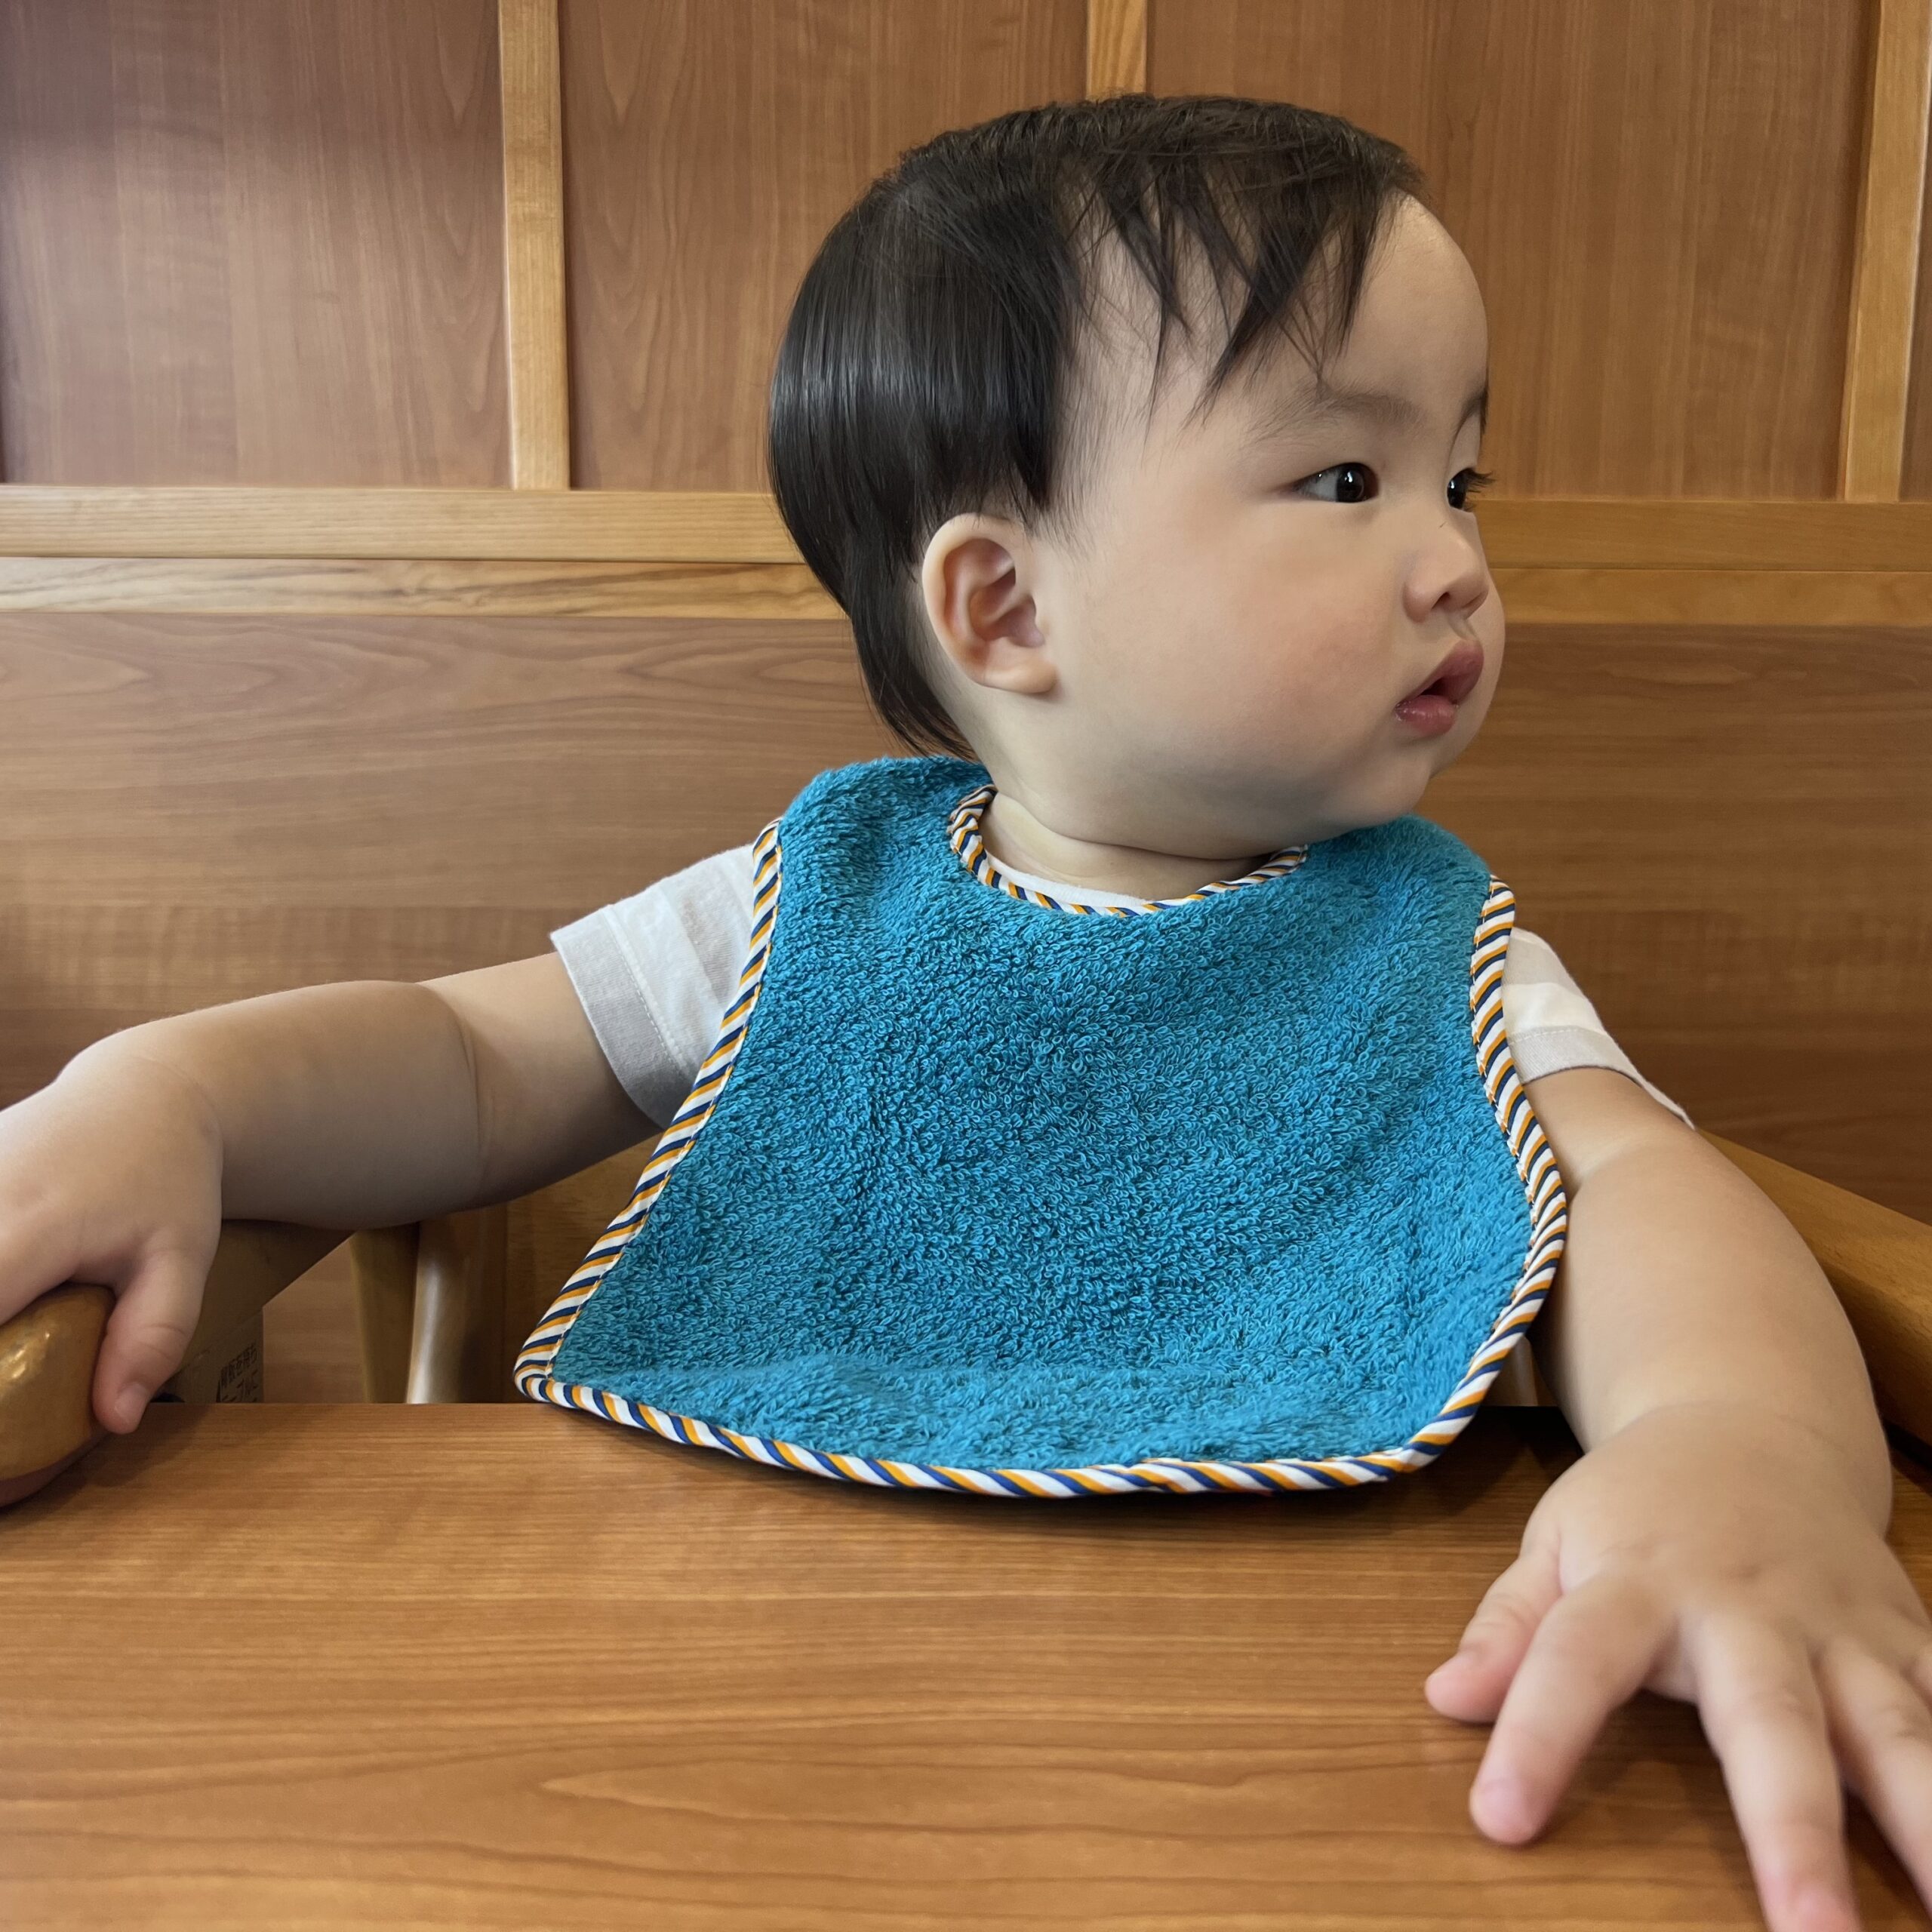 男孩帶著日本今治口水巾在餐廳吃飯